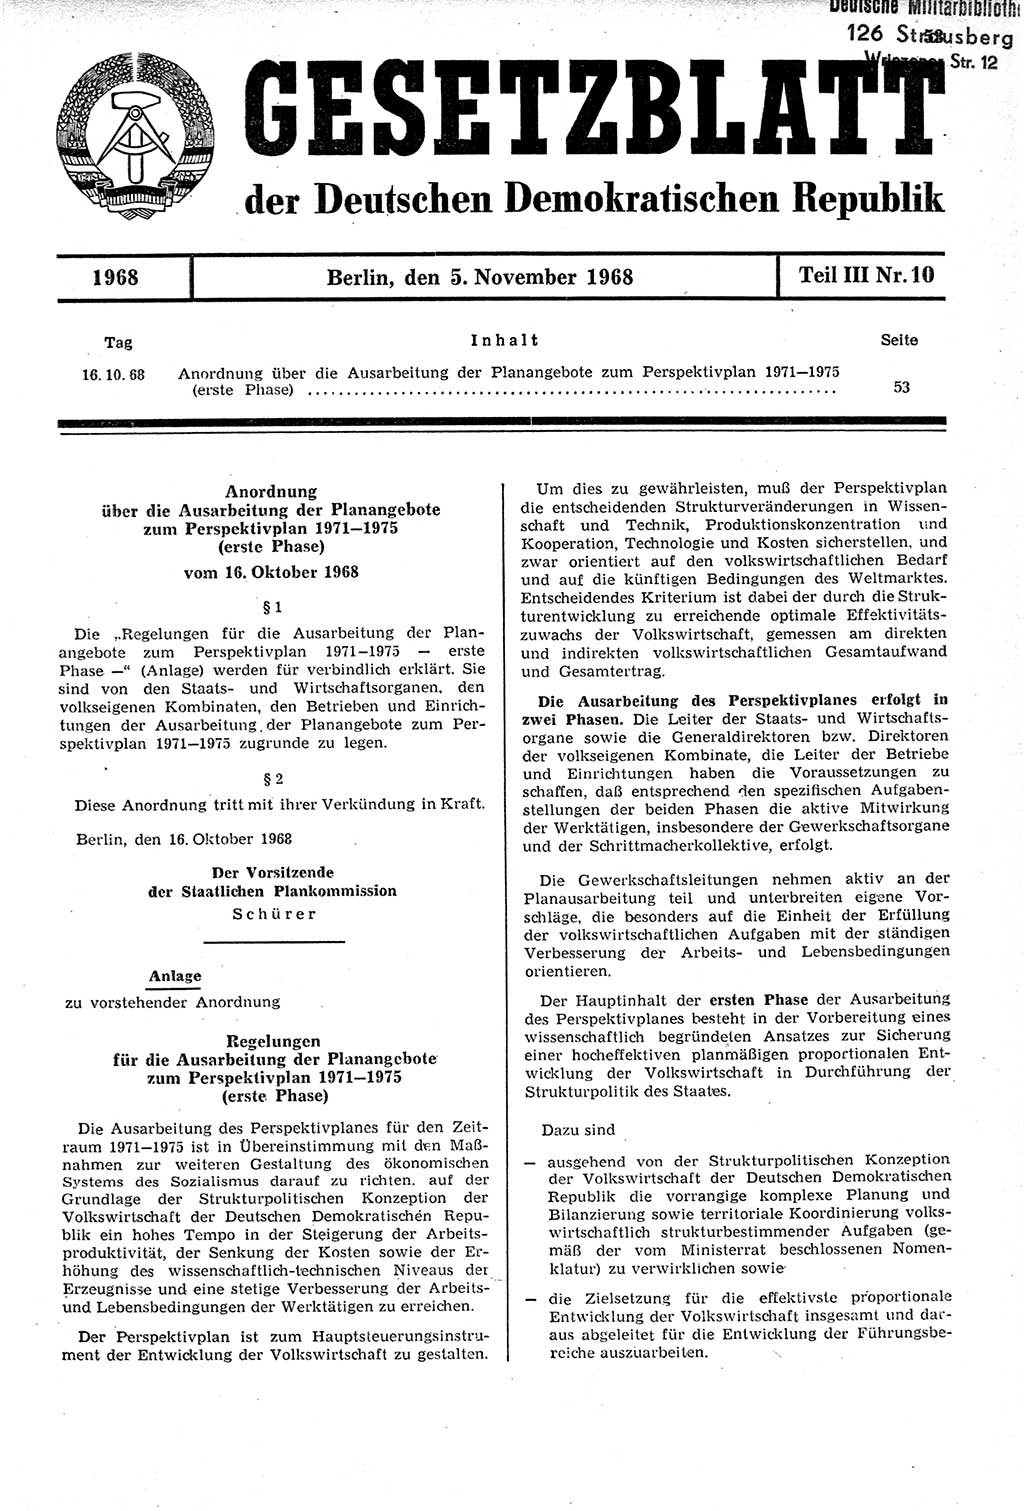 Gesetzblatt (GBl.) der Deutschen Demokratischen Republik (DDR) Teil ⅠⅠⅠ 1968, Seite 53 (GBl. DDR ⅠⅠⅠ 1968, S. 53)